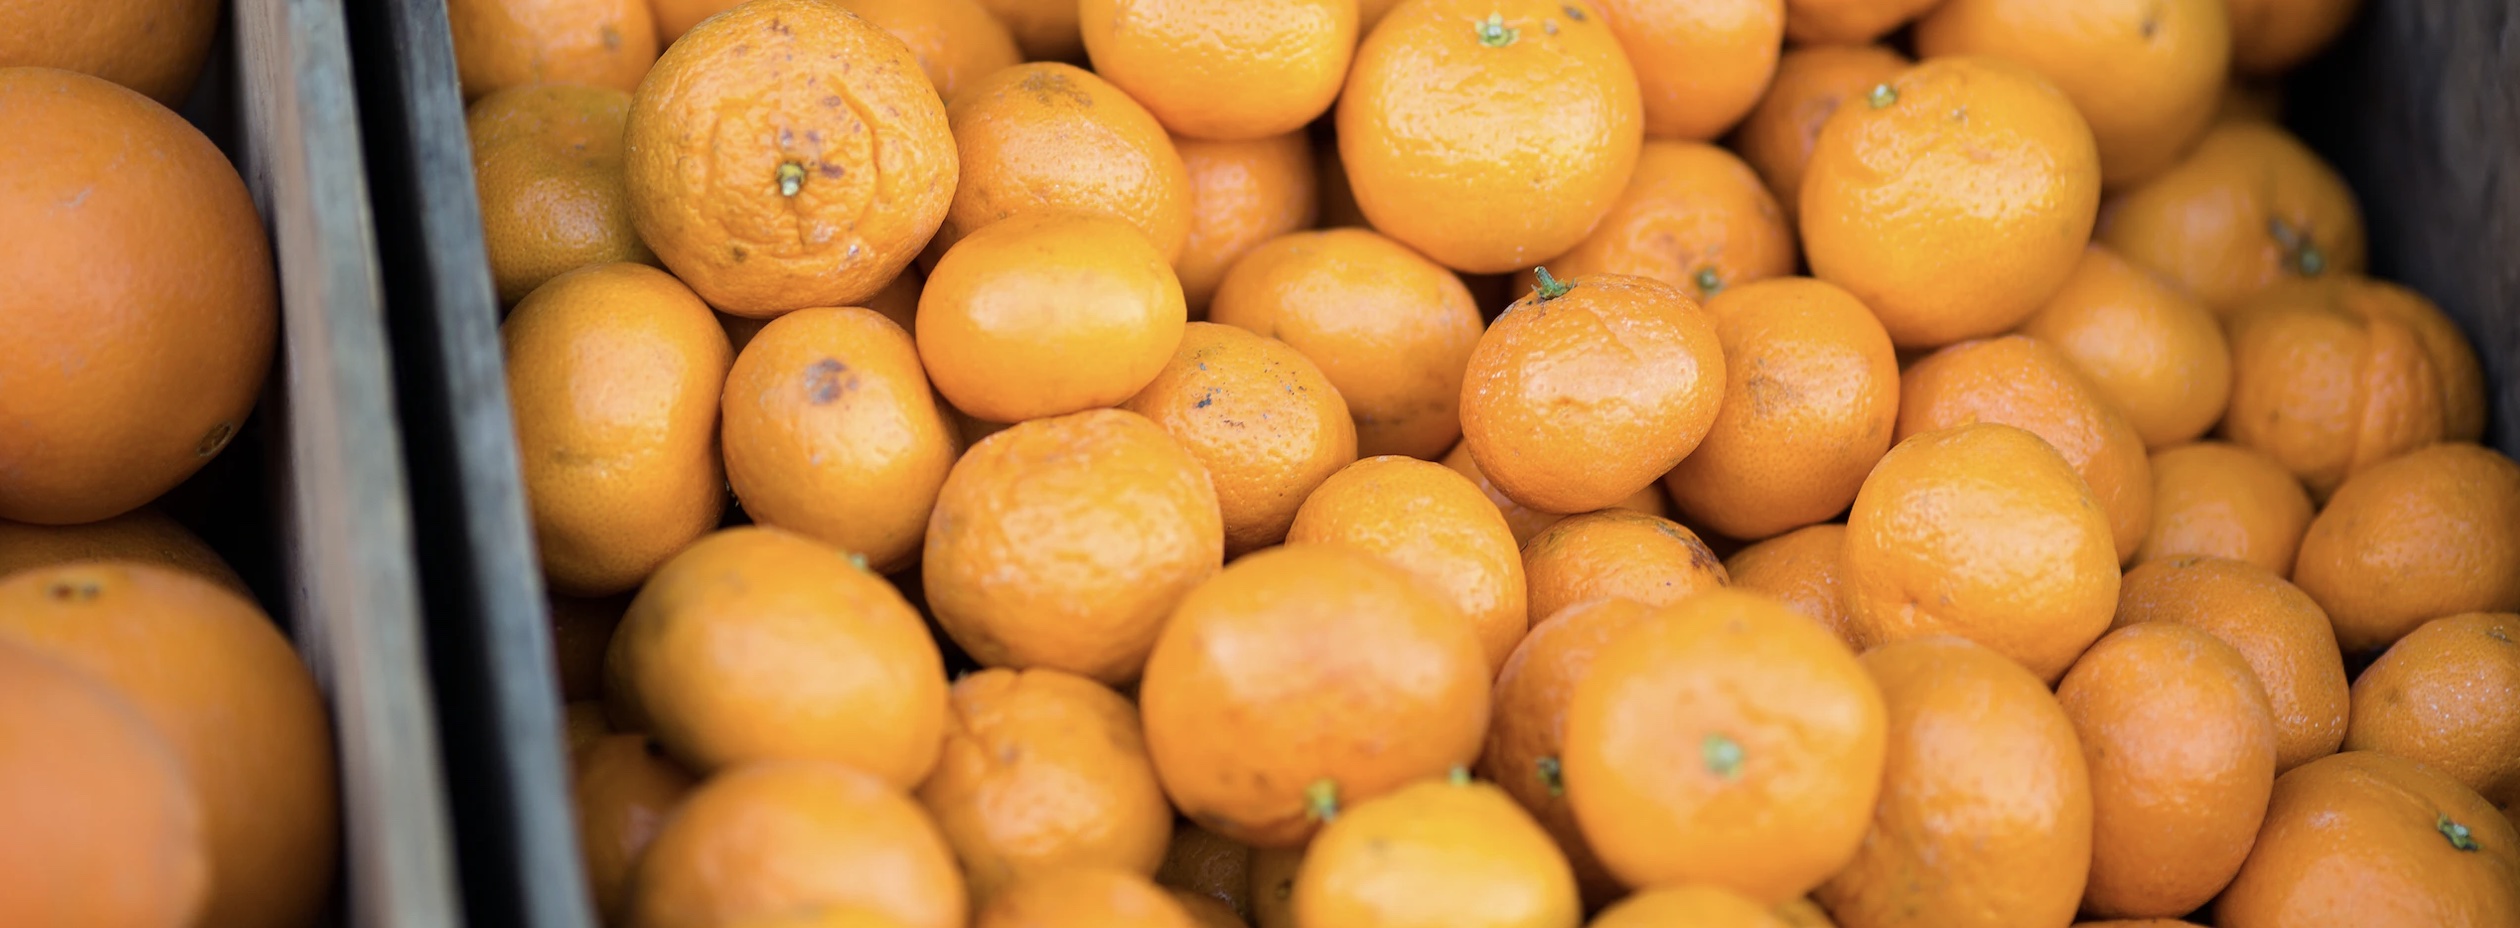 Дефицит мандаринов: вот как изменятся цены на фрукты к Новому году